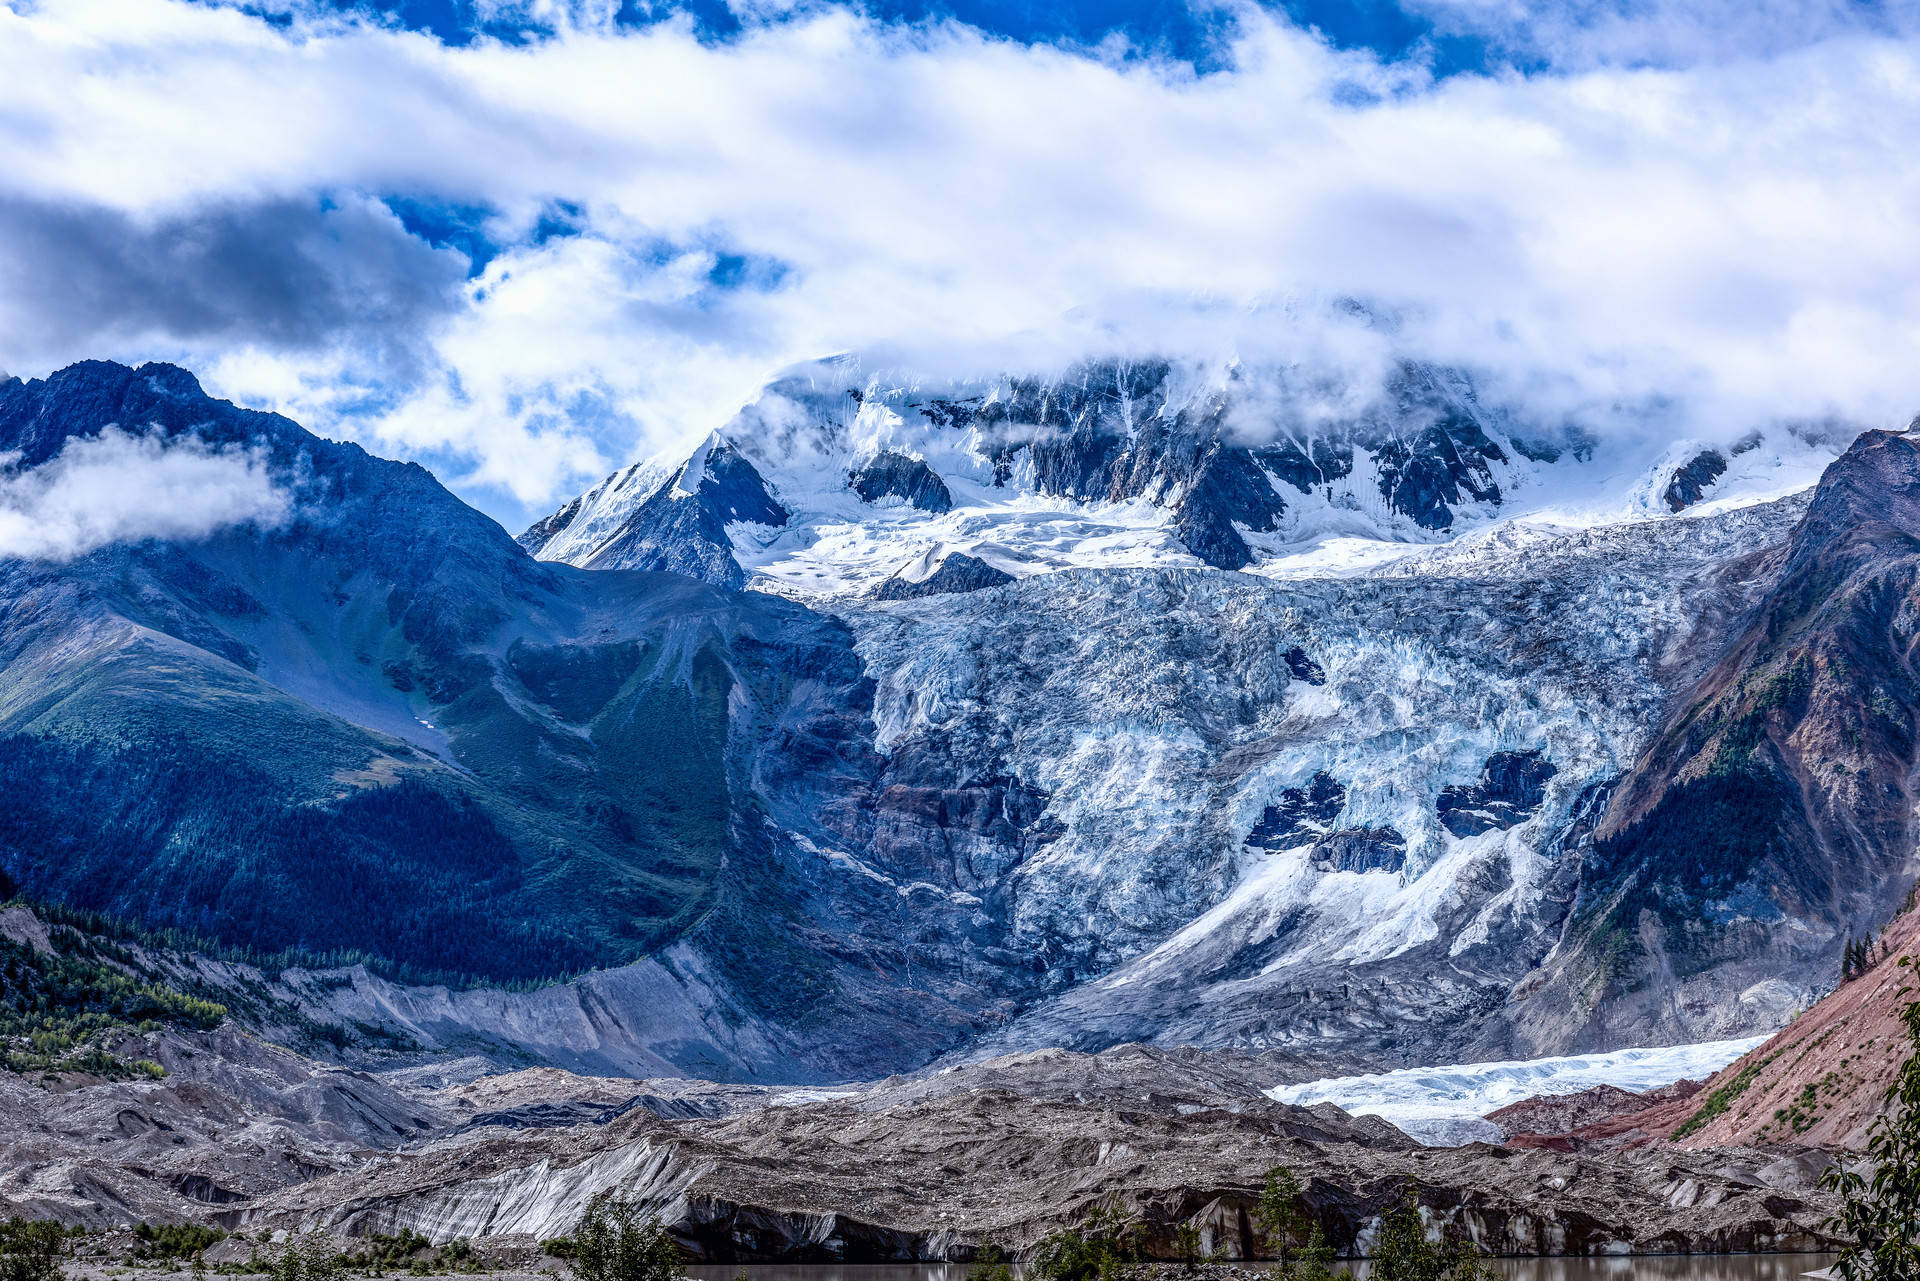 没想到青藏高原还有网红冰川,伴着雪山飞鸟就像走进冰河世纪